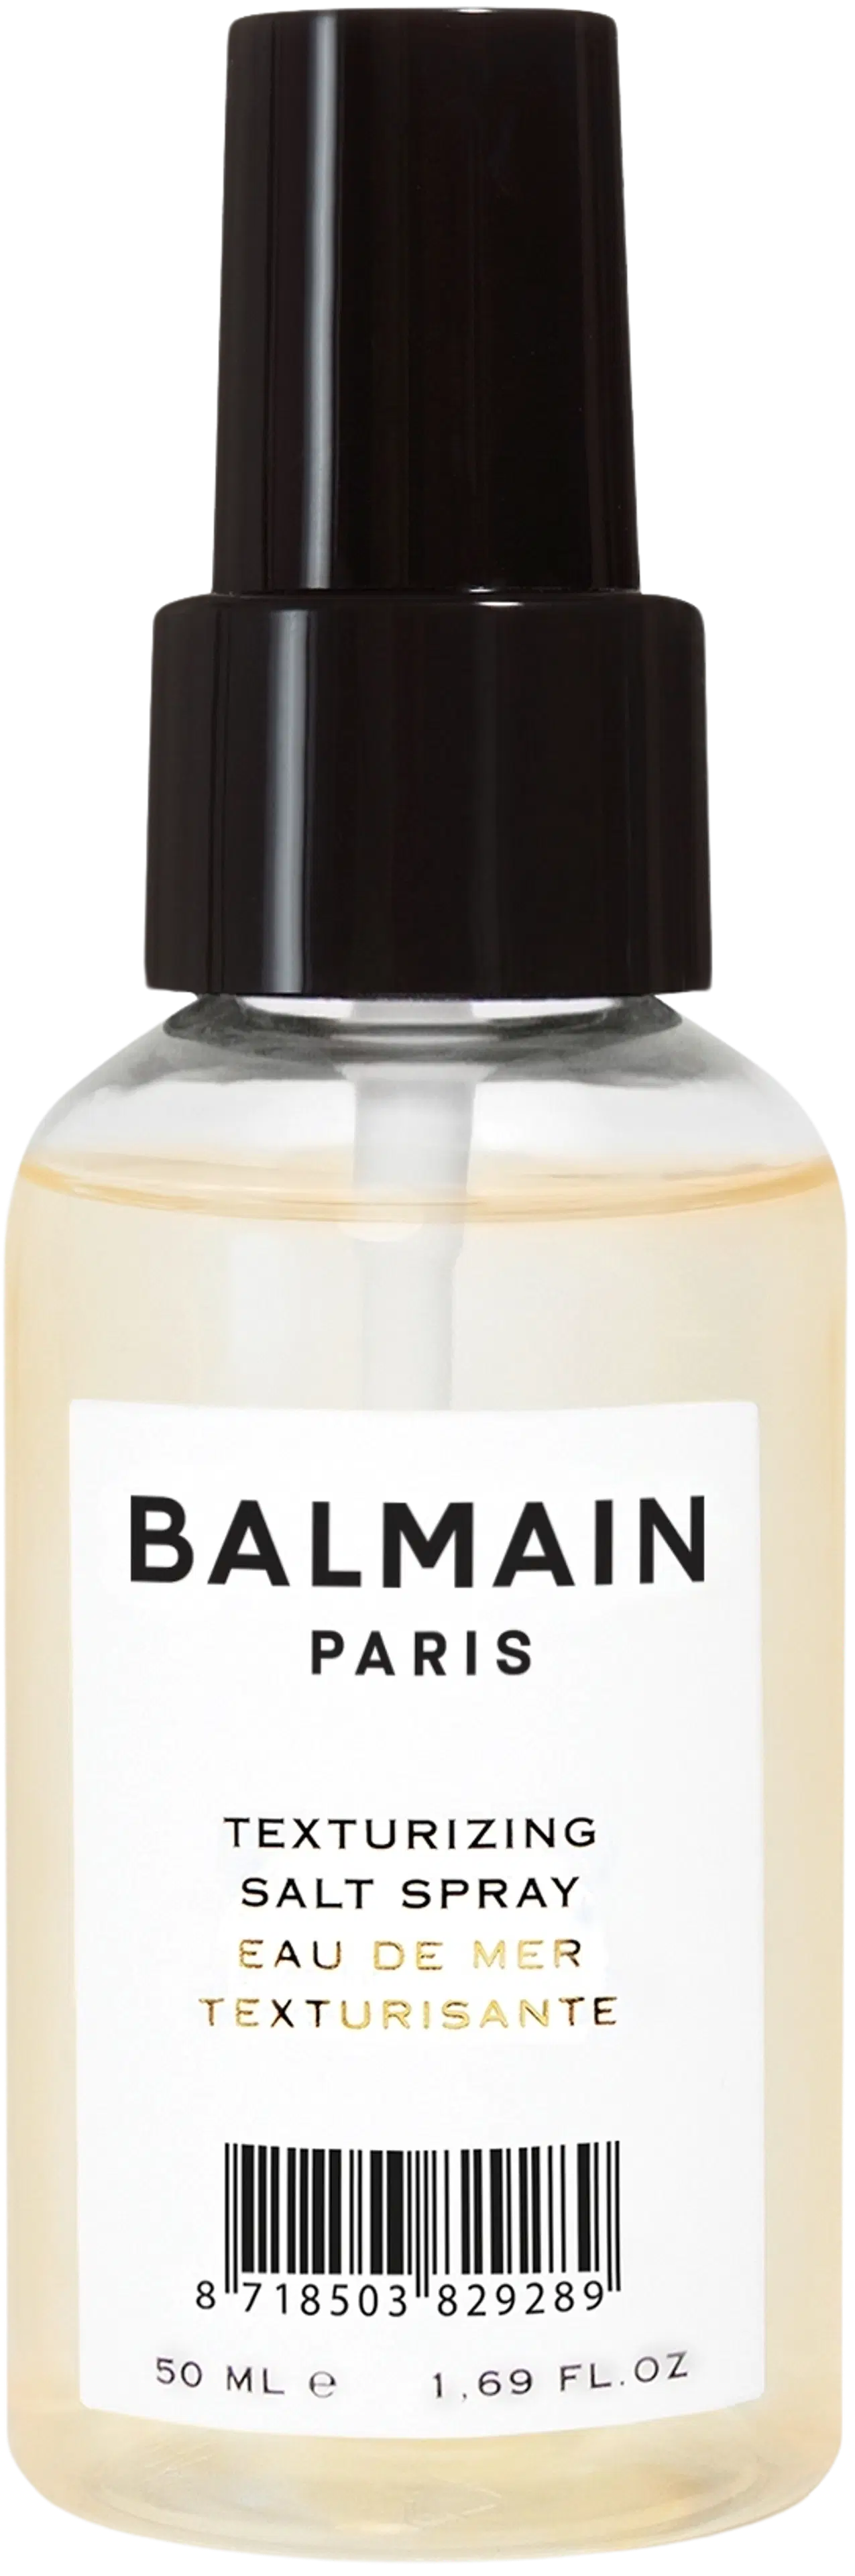 Balmain Texturizing Salt Spray suolasuihke 50 ml